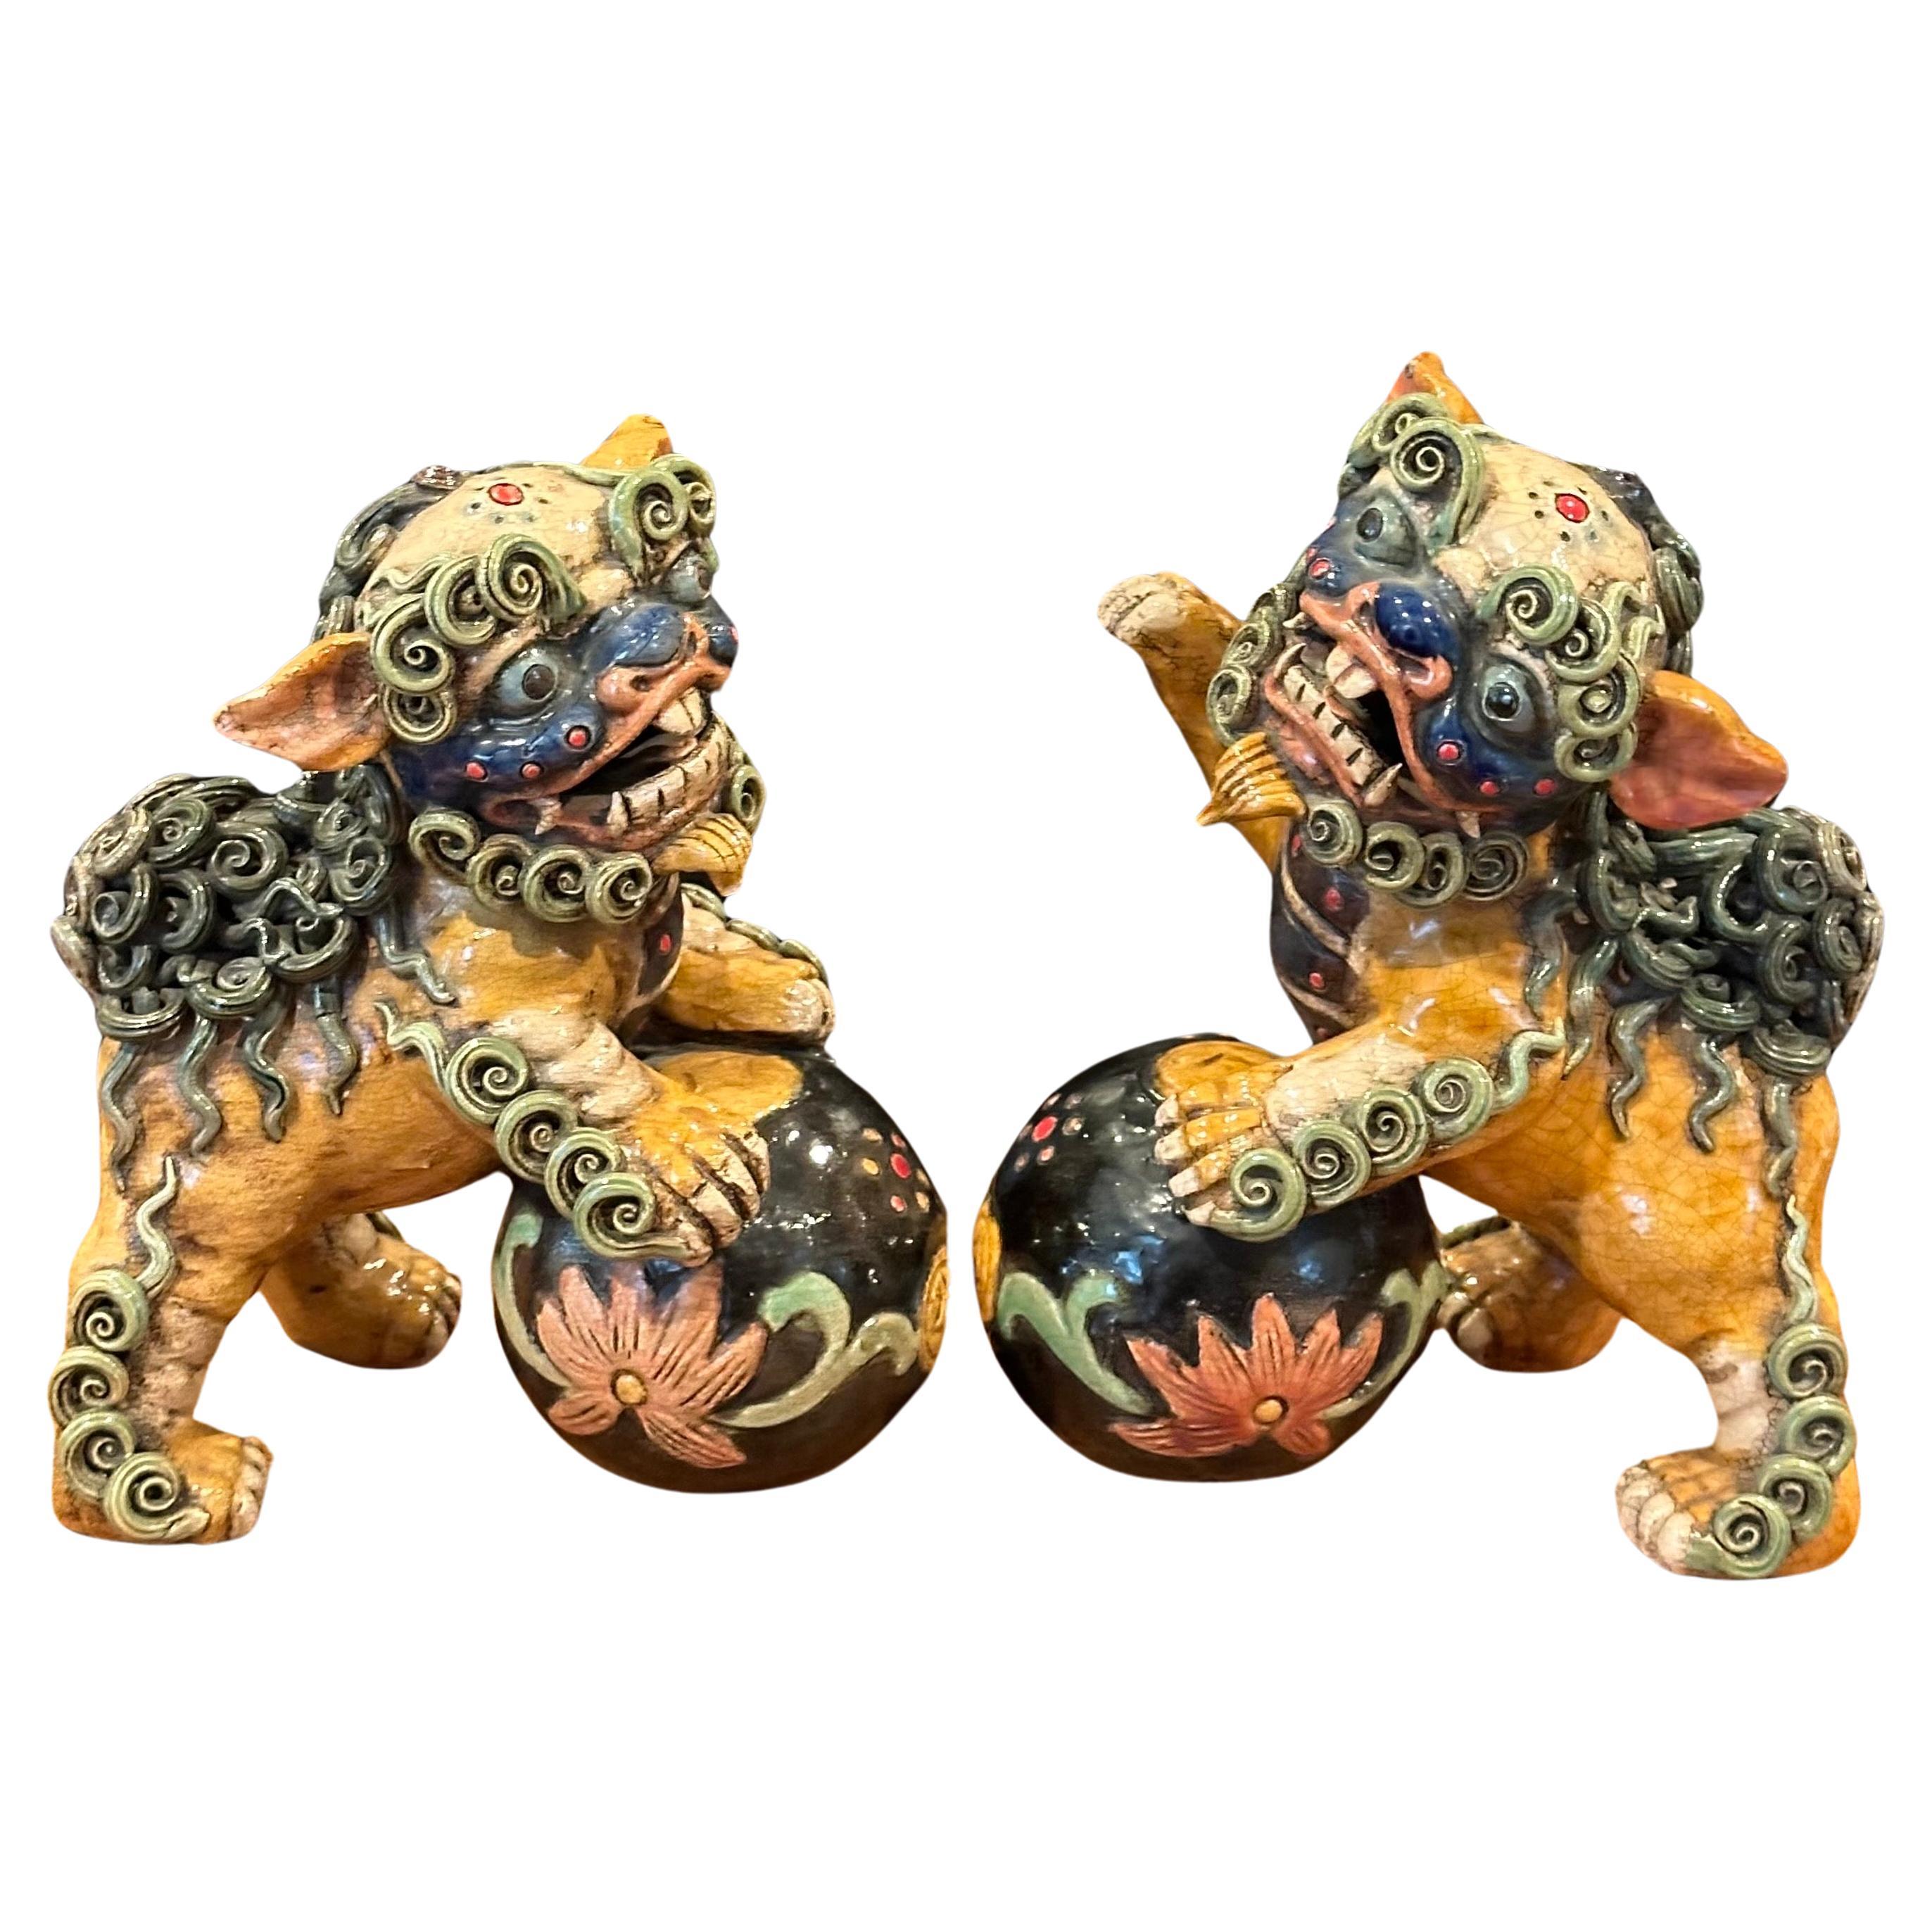 Superbe paire de chiens foo en céramique émaillée polychrome de Chine, datant du milieu du siècle dernier, vers les années 1950. La paire mesure 14 